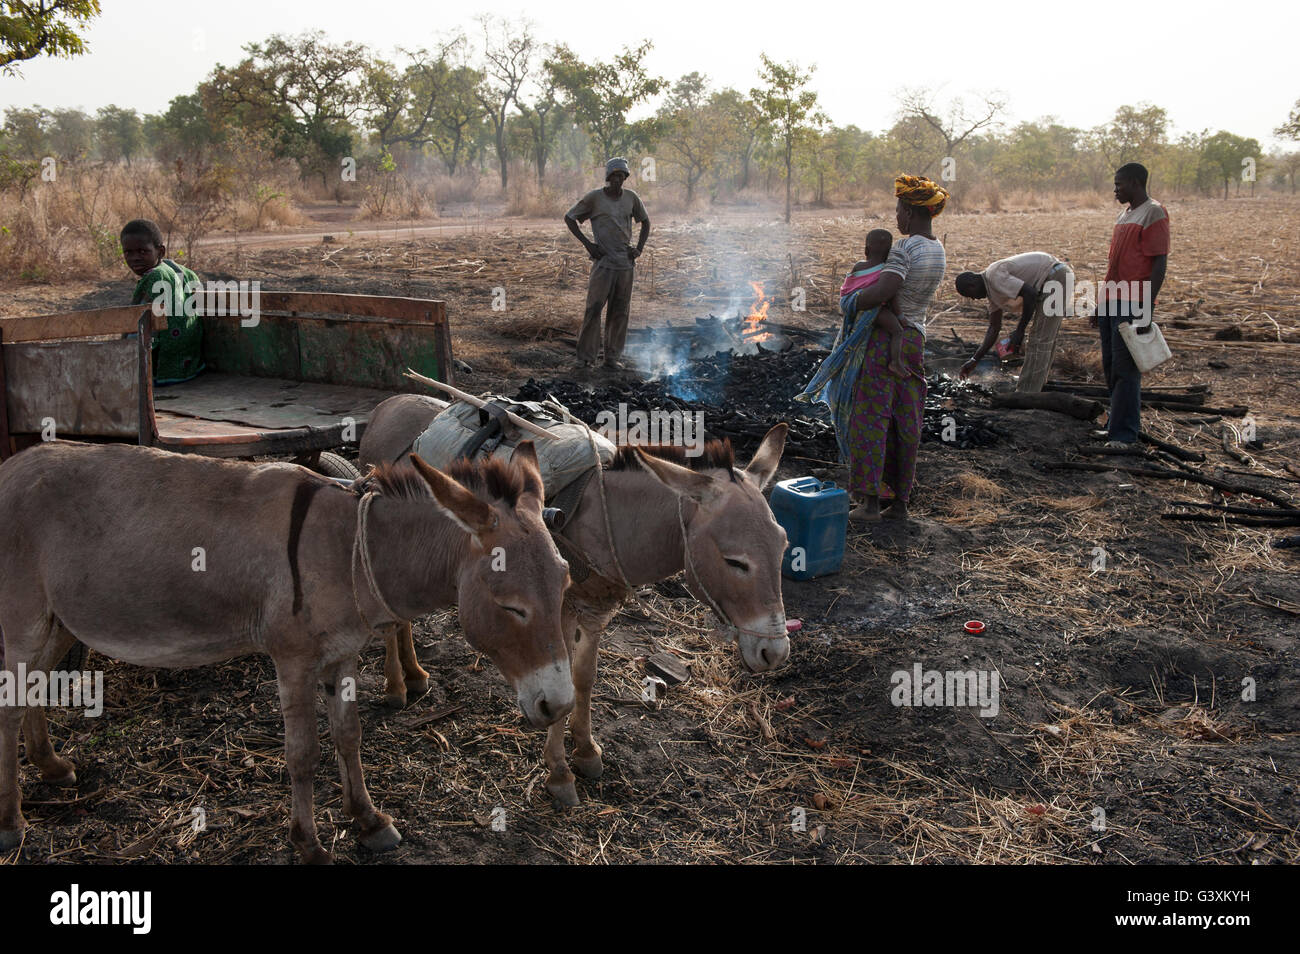 MALI, Sahelzone, über die Produktion von Kohle von Bush Holz ist eine Umweltverträglichkeitsprüfung für dieses trockene Region, Holzkohle zum Kochen Energie verwendet wird. Stockfoto